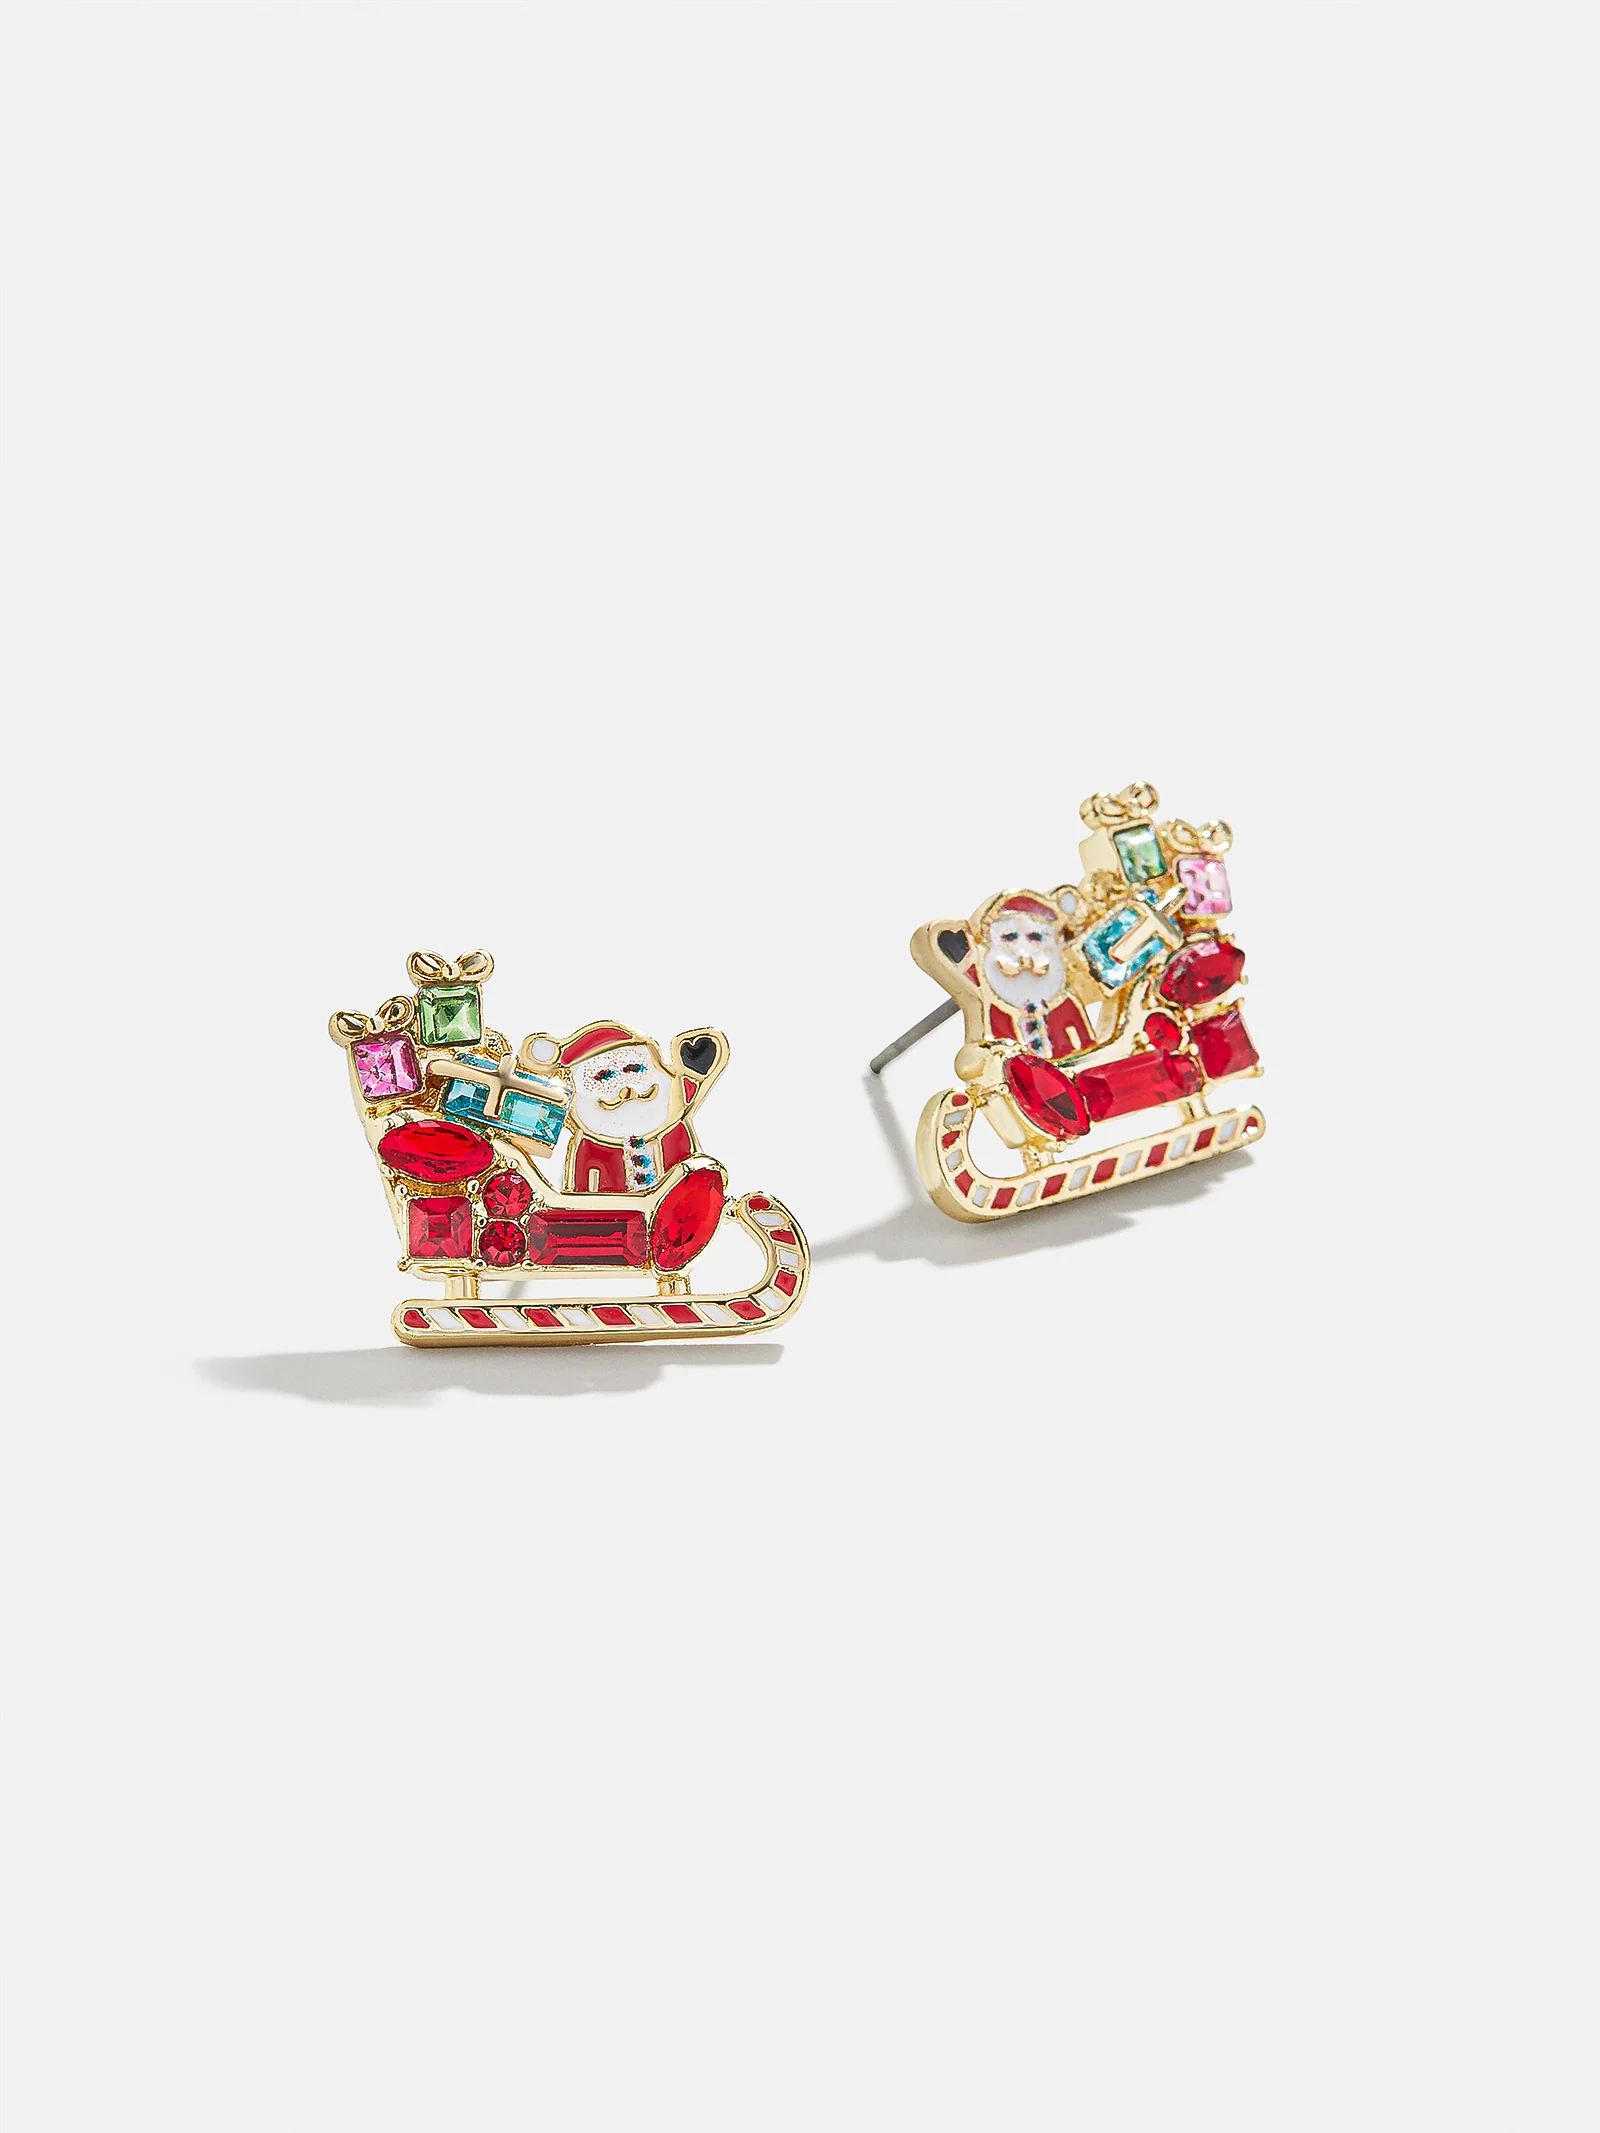 Sleigh Bells Ring Earrings - Santa's Sleigh Studs | BaubleBar (US)